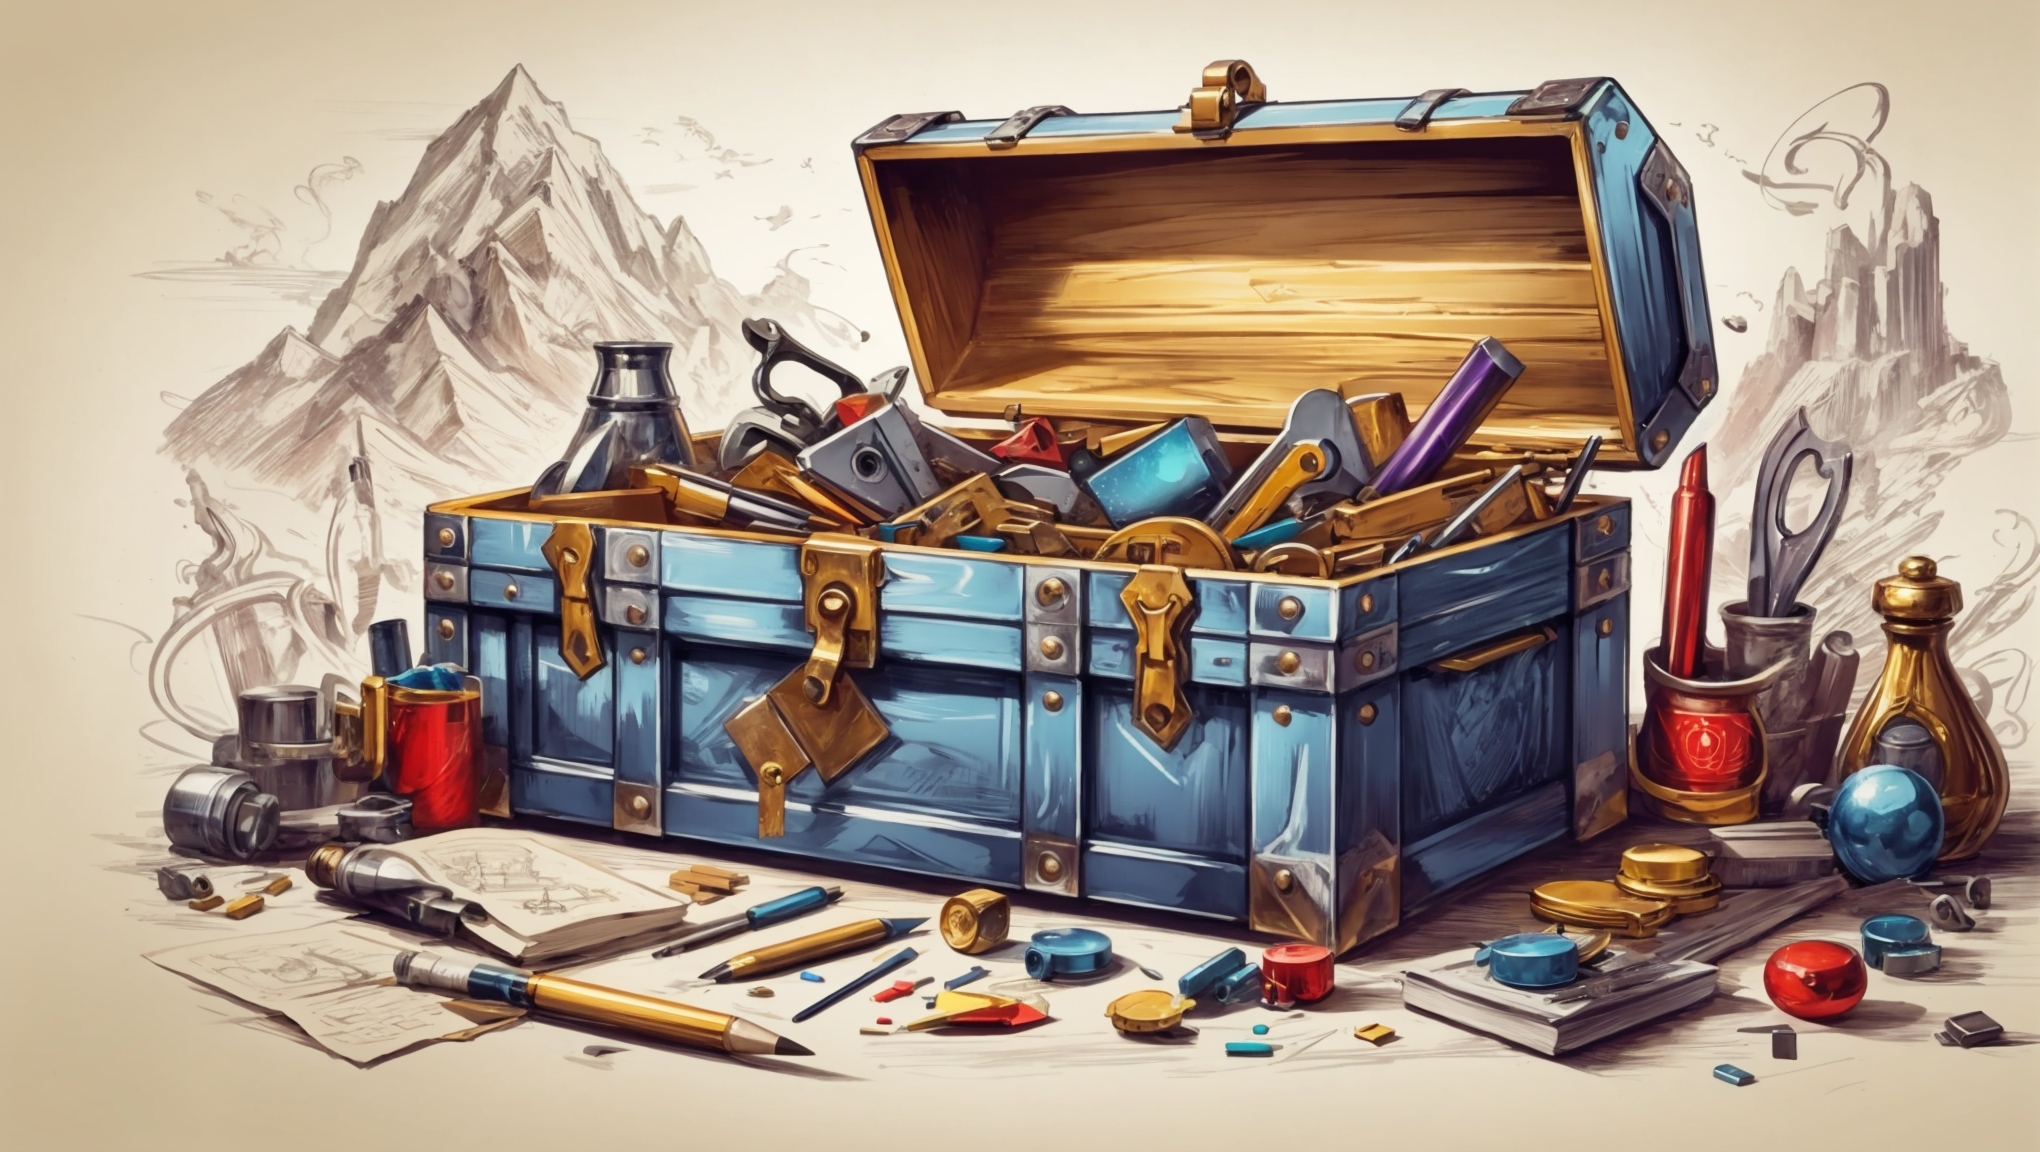 magical toolbox representing SEO tools.